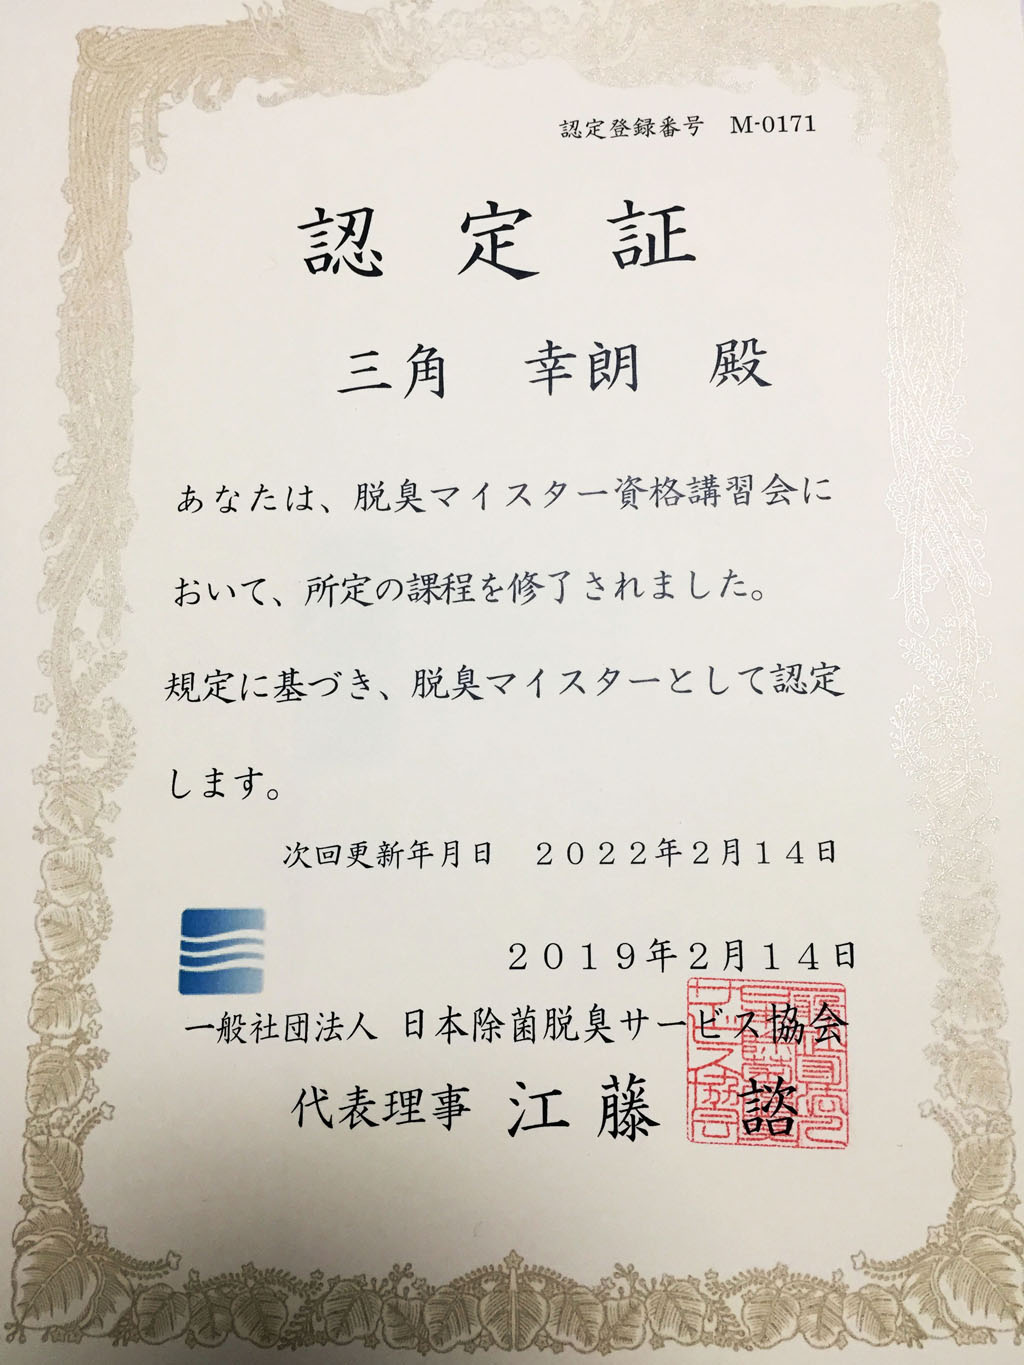 一般社団法人日本除菌脱臭サービス協会